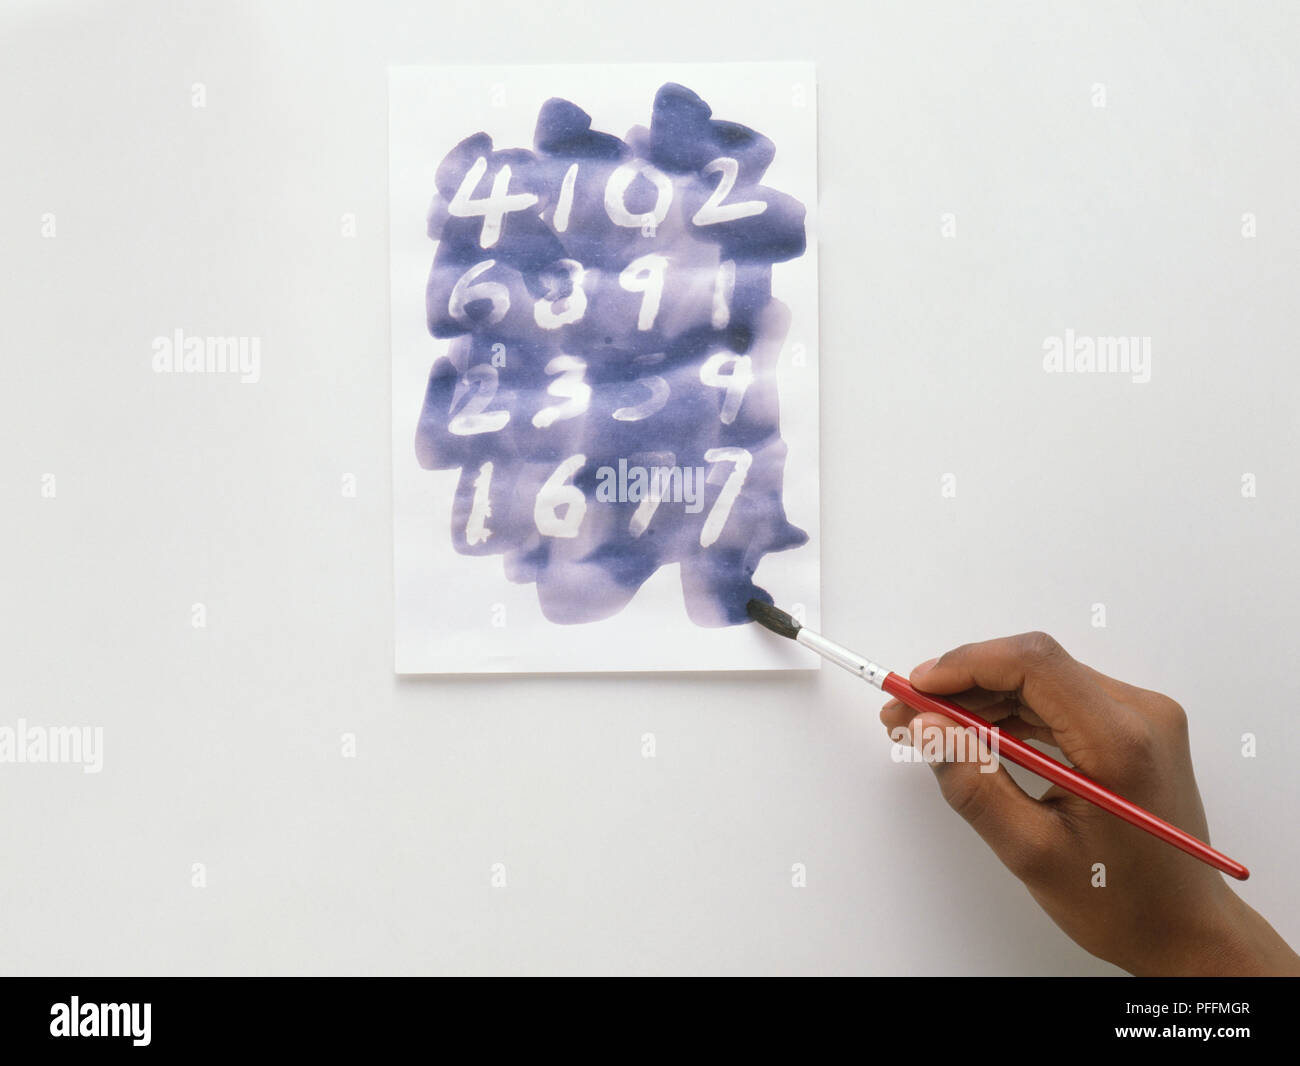 Bambino con lo strumento Pennello e inchiostro blu per rendere invisibili i numeri vengono visualizzati sulla carta Foto Stock